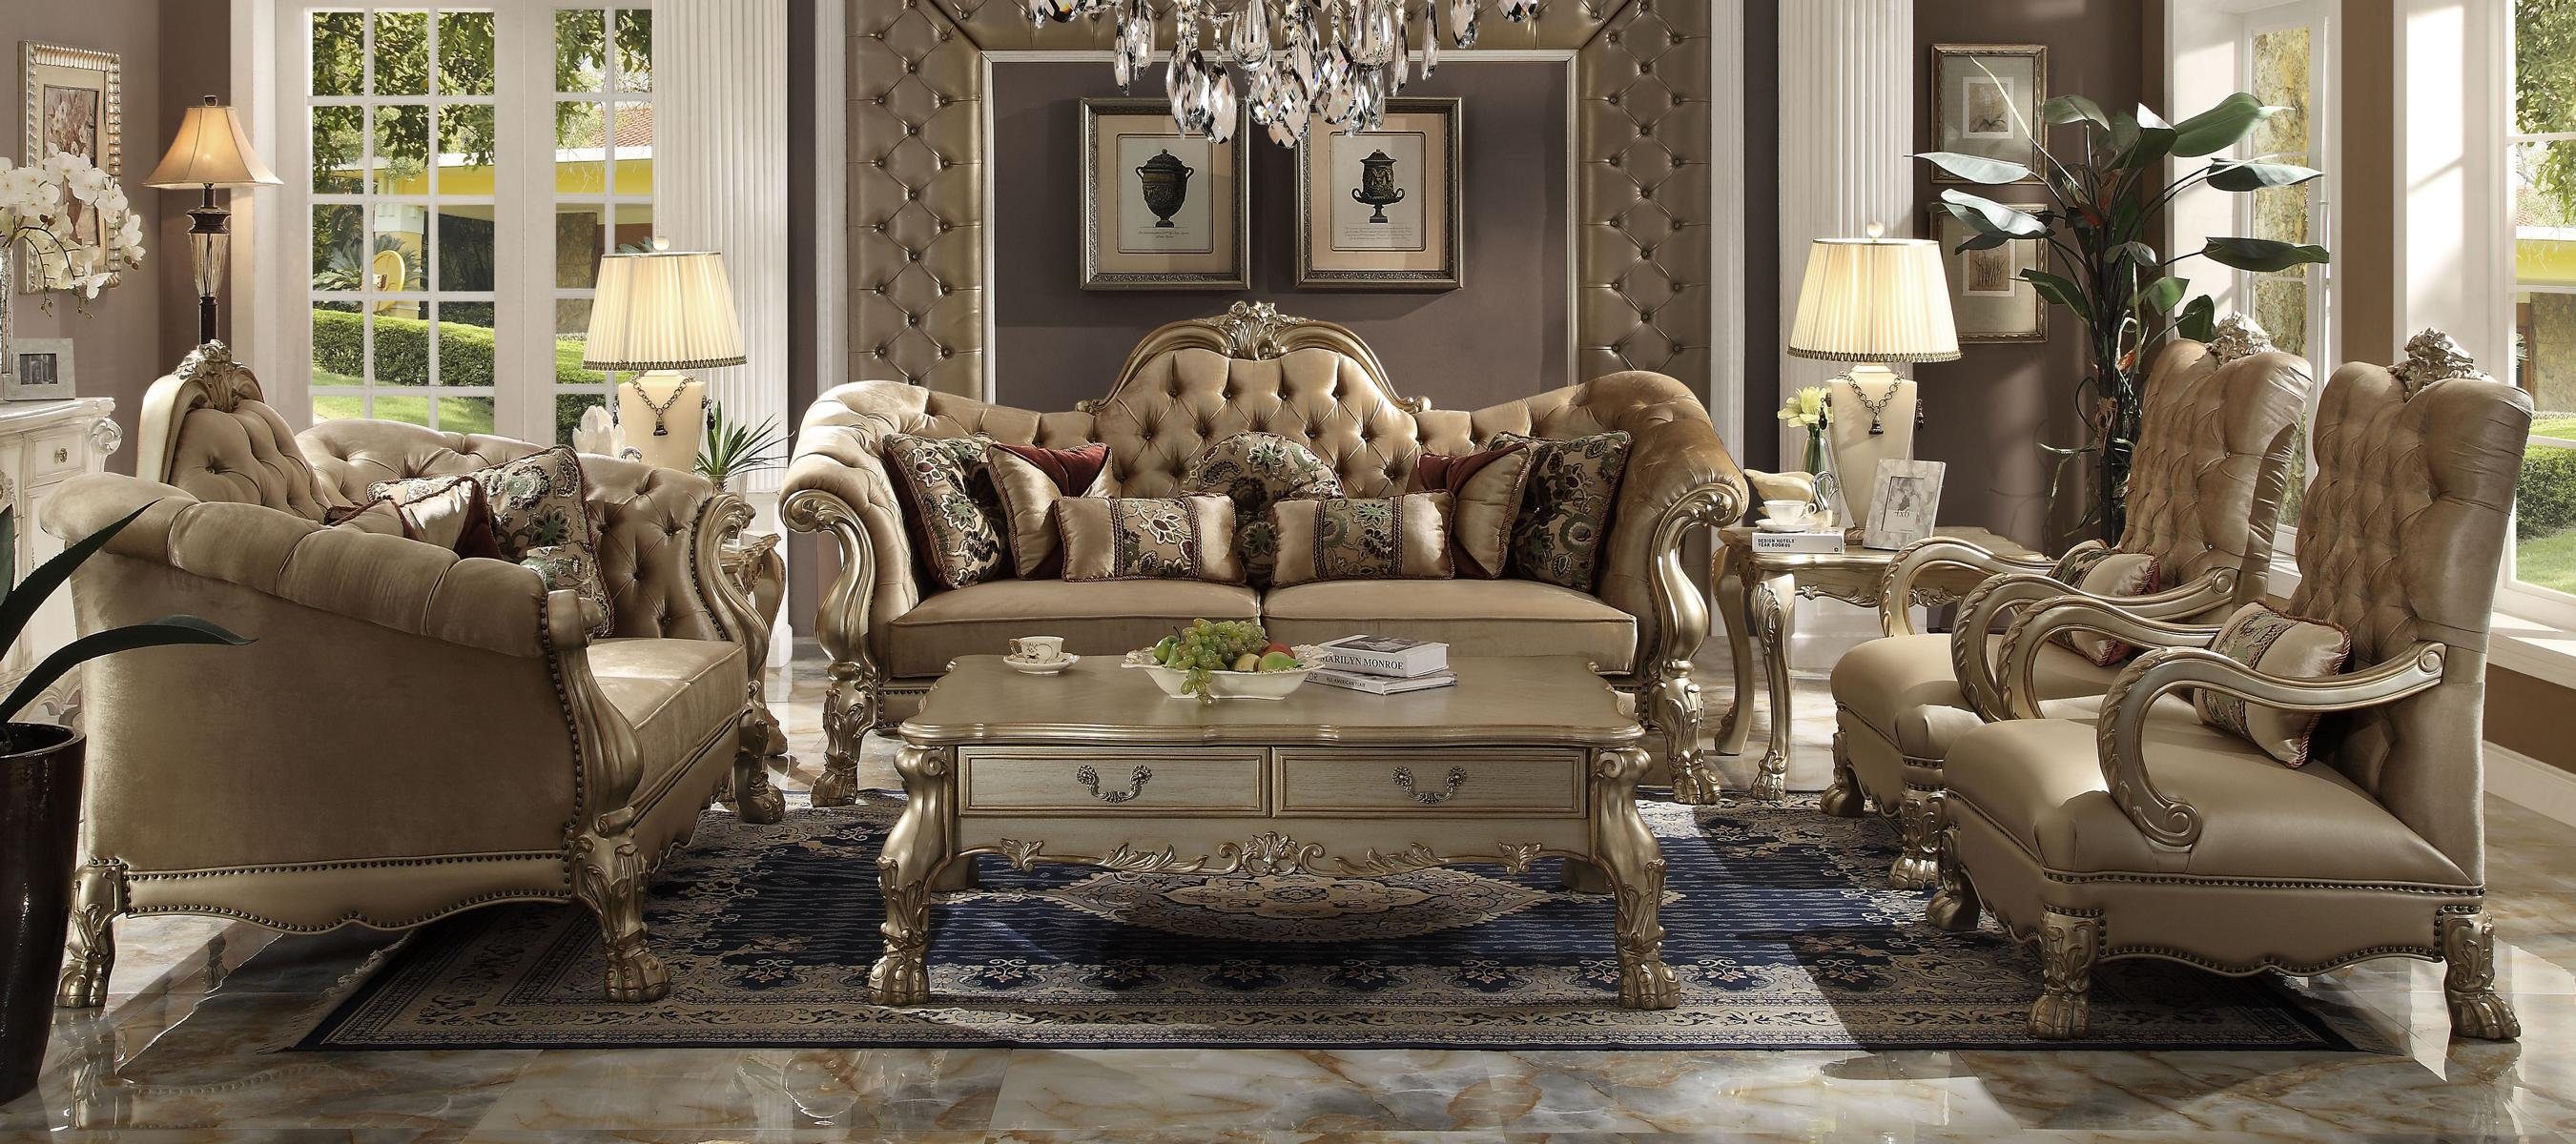 JVmoebel Wohnzimmer-Set, Luxus Möbel Sofagarnitur Couch Sofa Polster 3+2+1+1 Sitzer